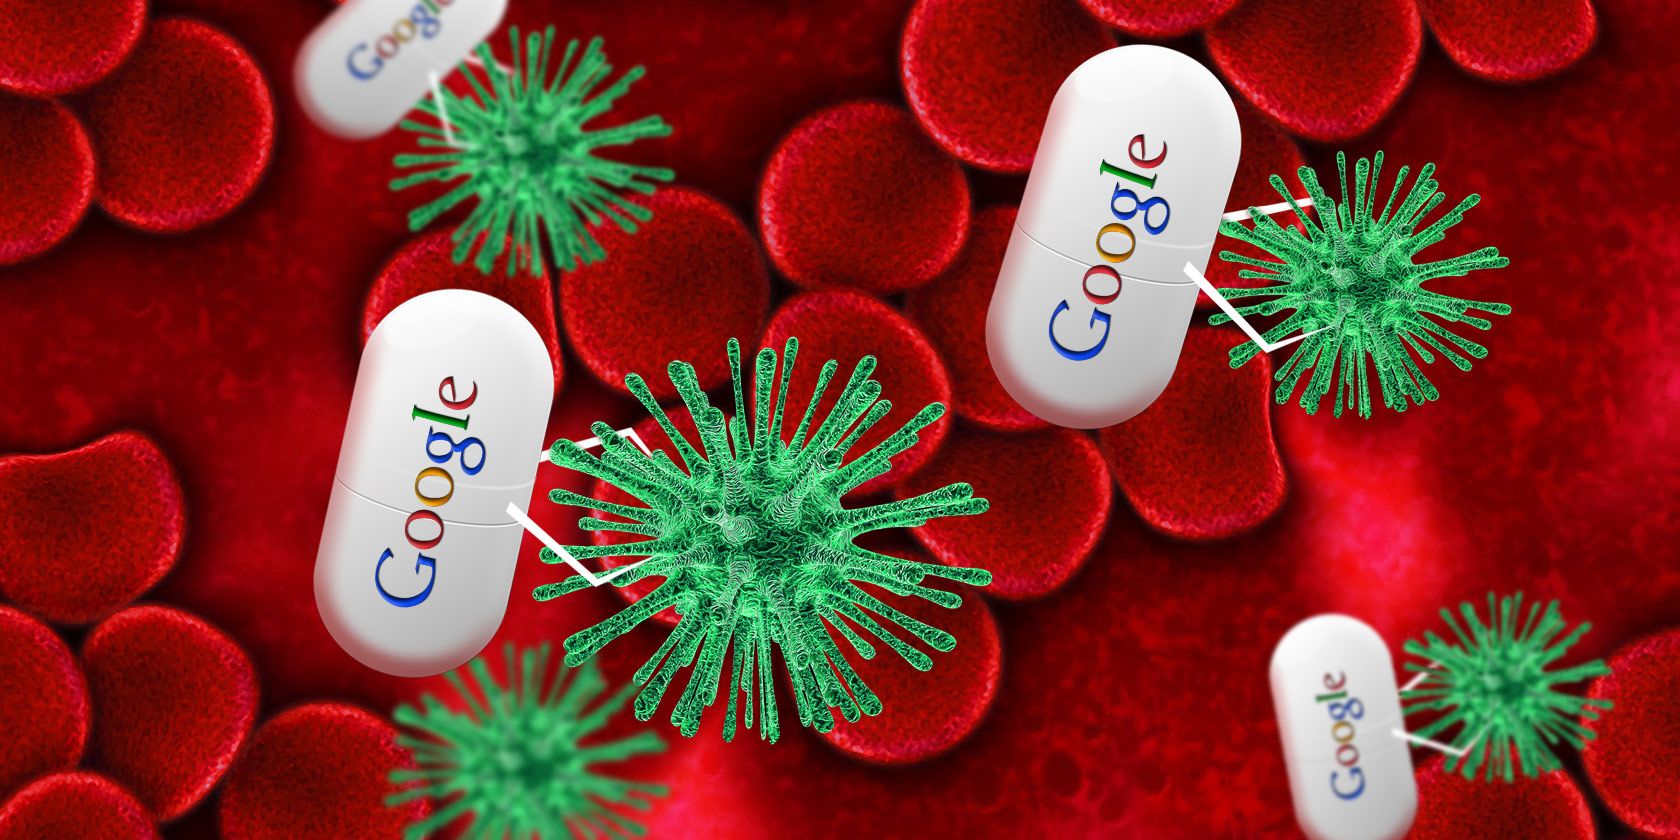 google-nano-pill